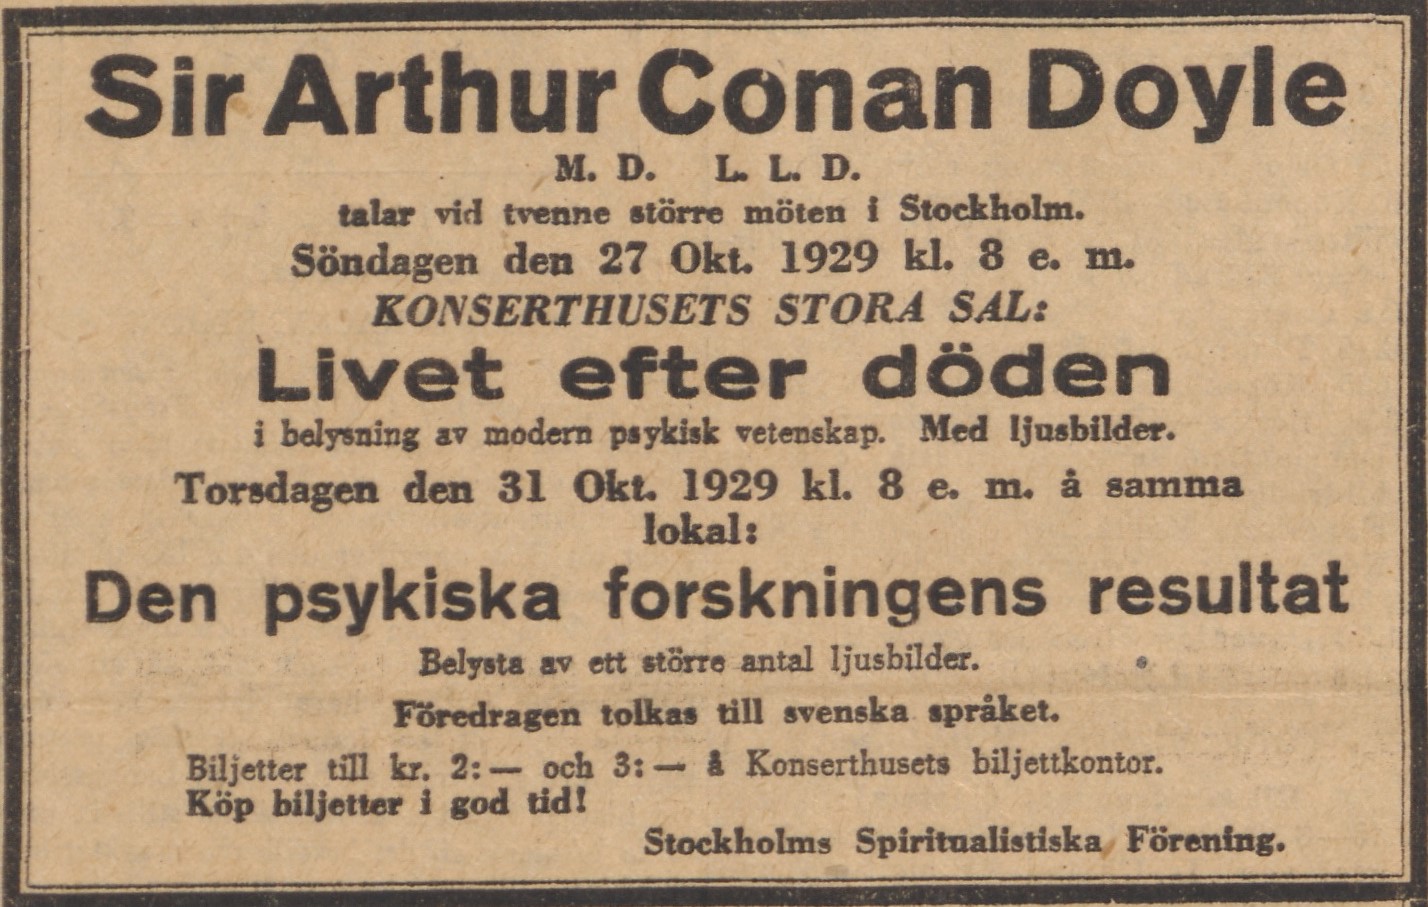 Annons i Aftonbladet om Doyles föreläsningar i Konserthuset.